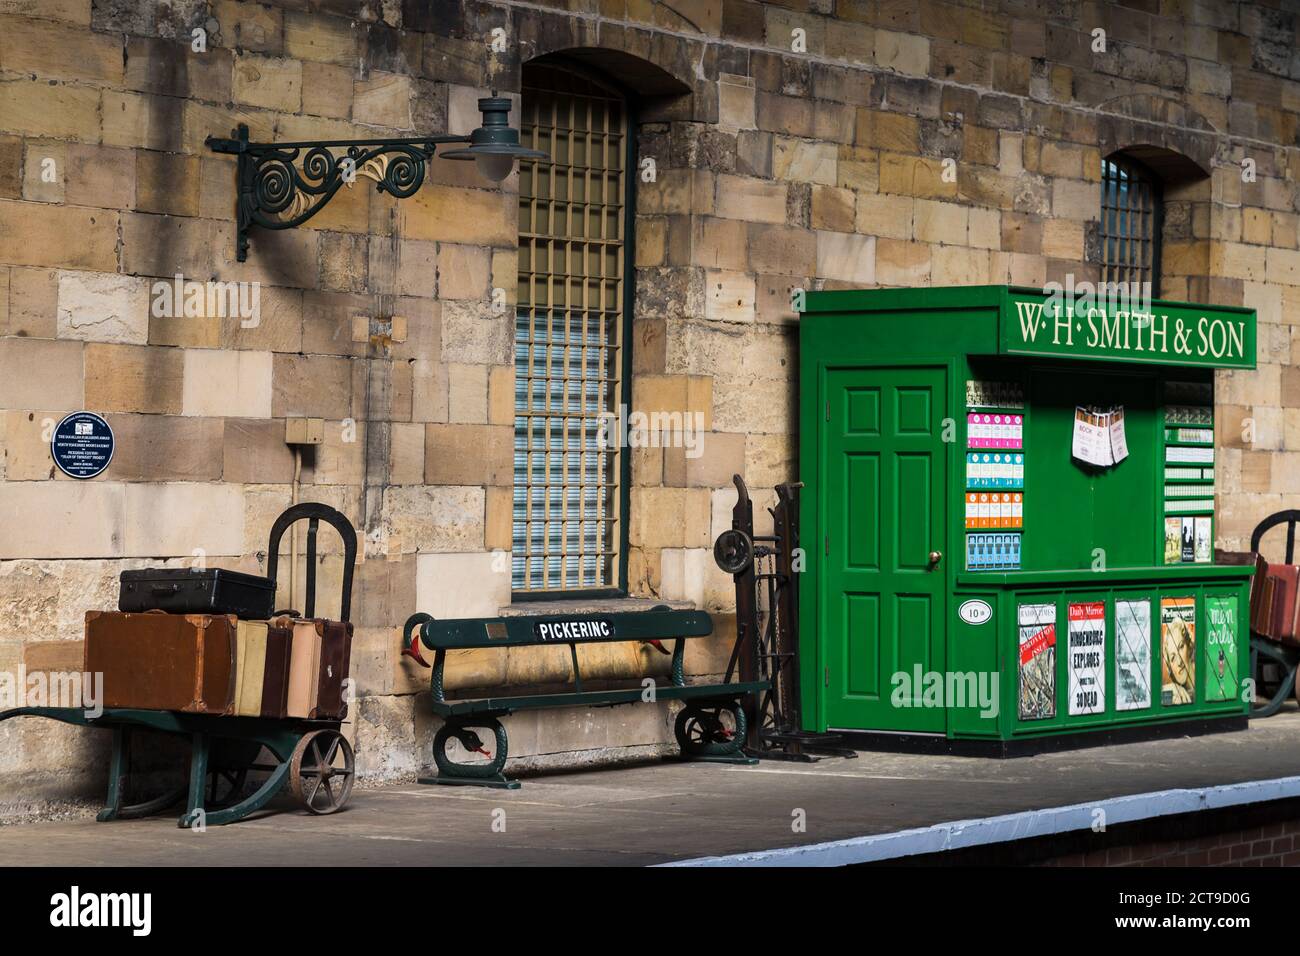 Objets d'antan sur la plate-forme de Pickering, berceau du chemin de fer du North Yorkshire rendu célèbre par les films de Harry Potter. Cette photo a été prise en septembre 2 Banque D'Images